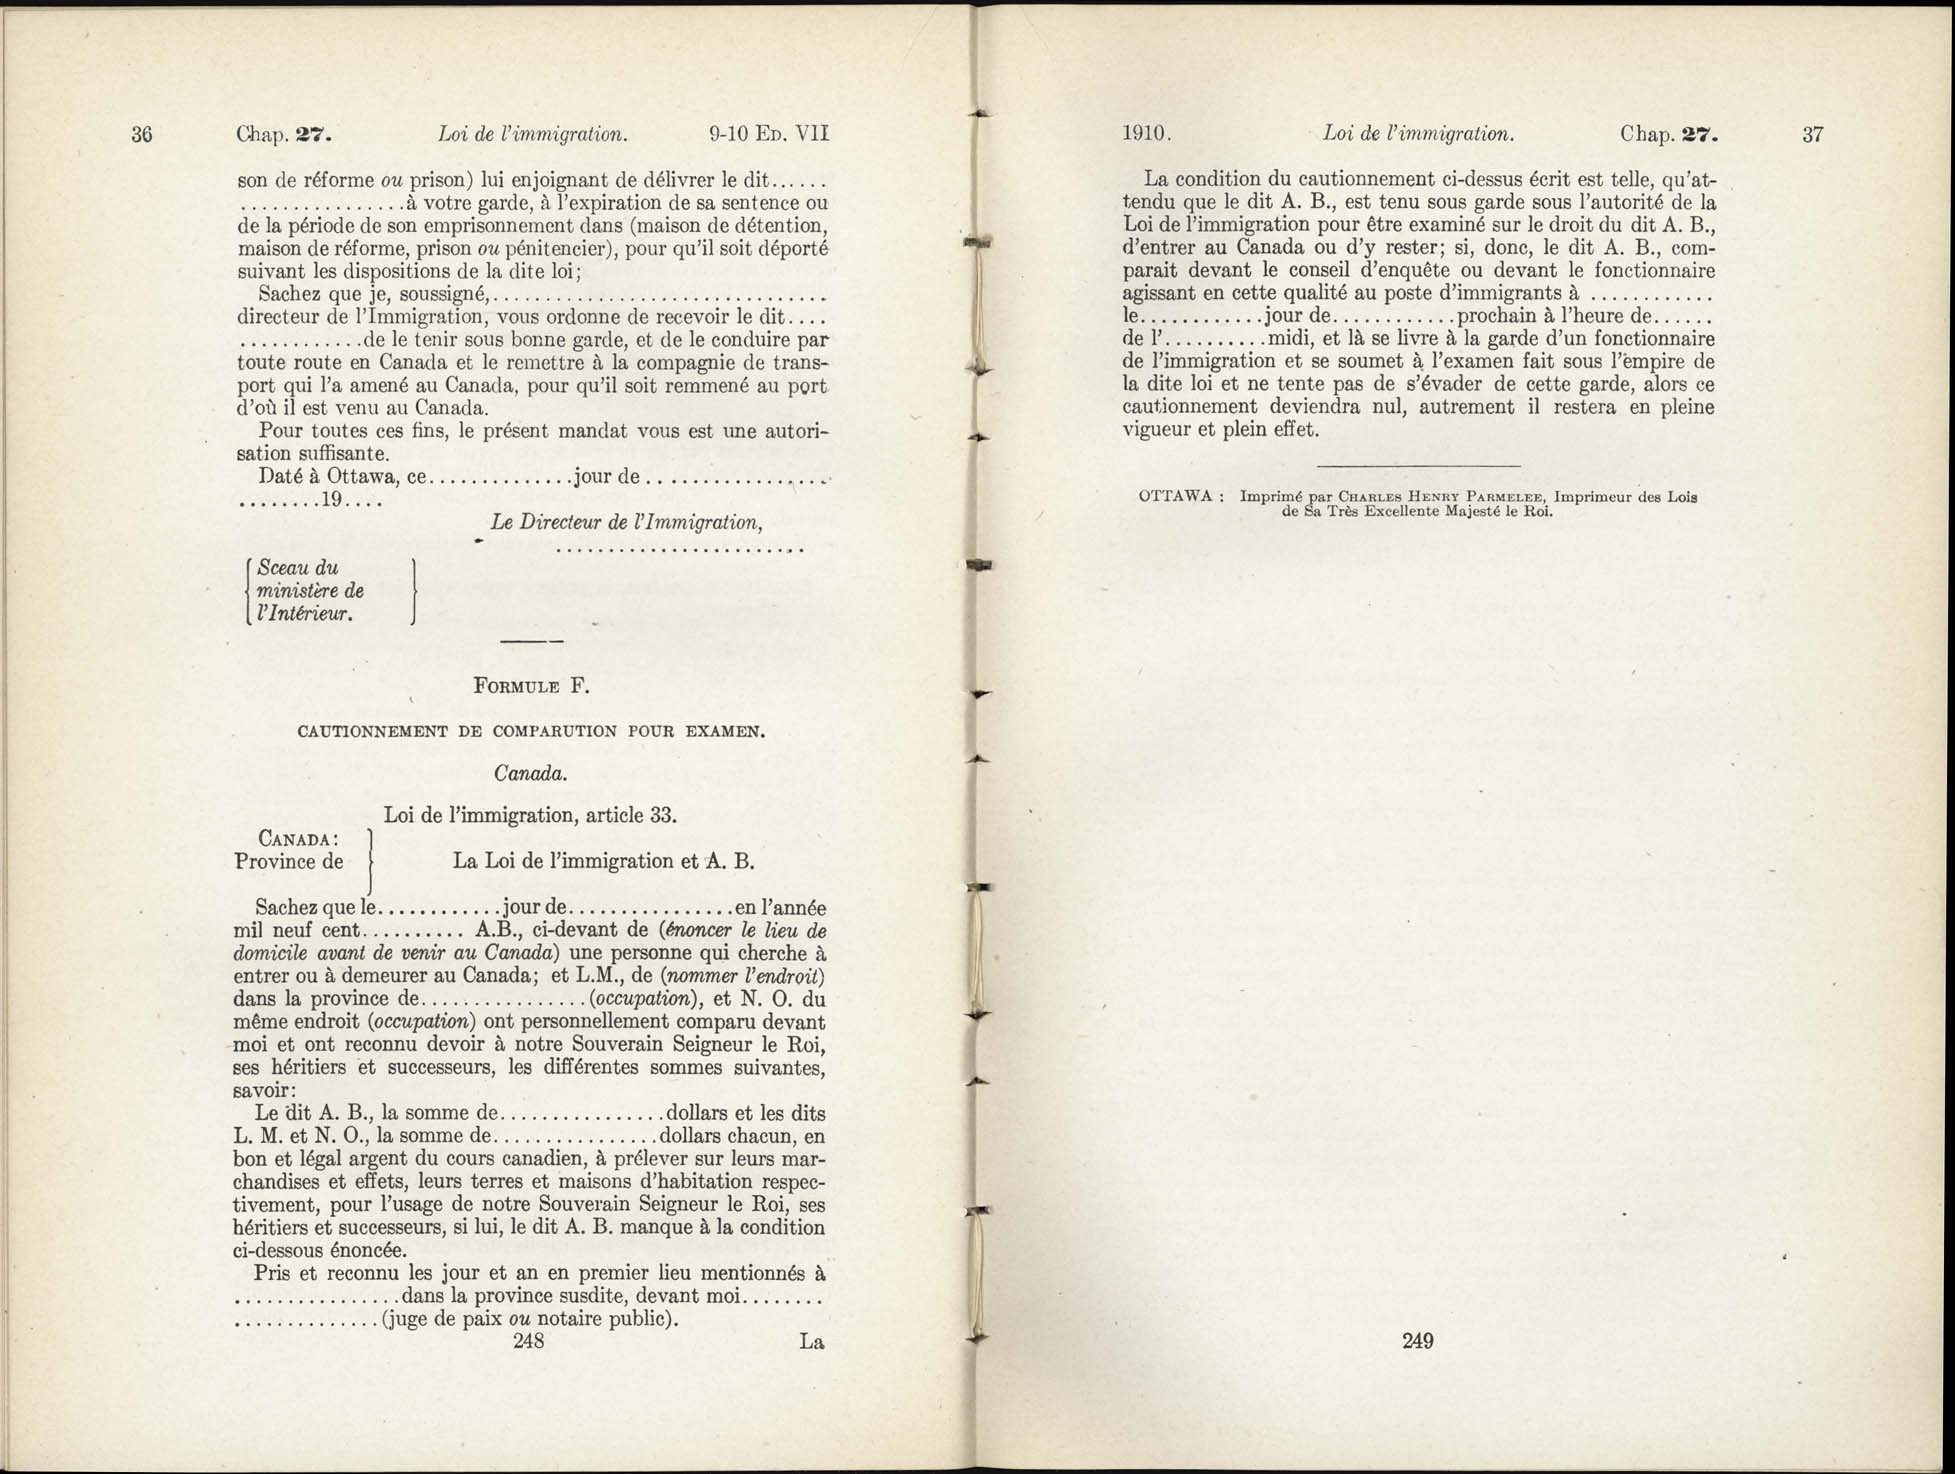 Chap 27 Page 248, 249 L’Acte d’immigration, 1910